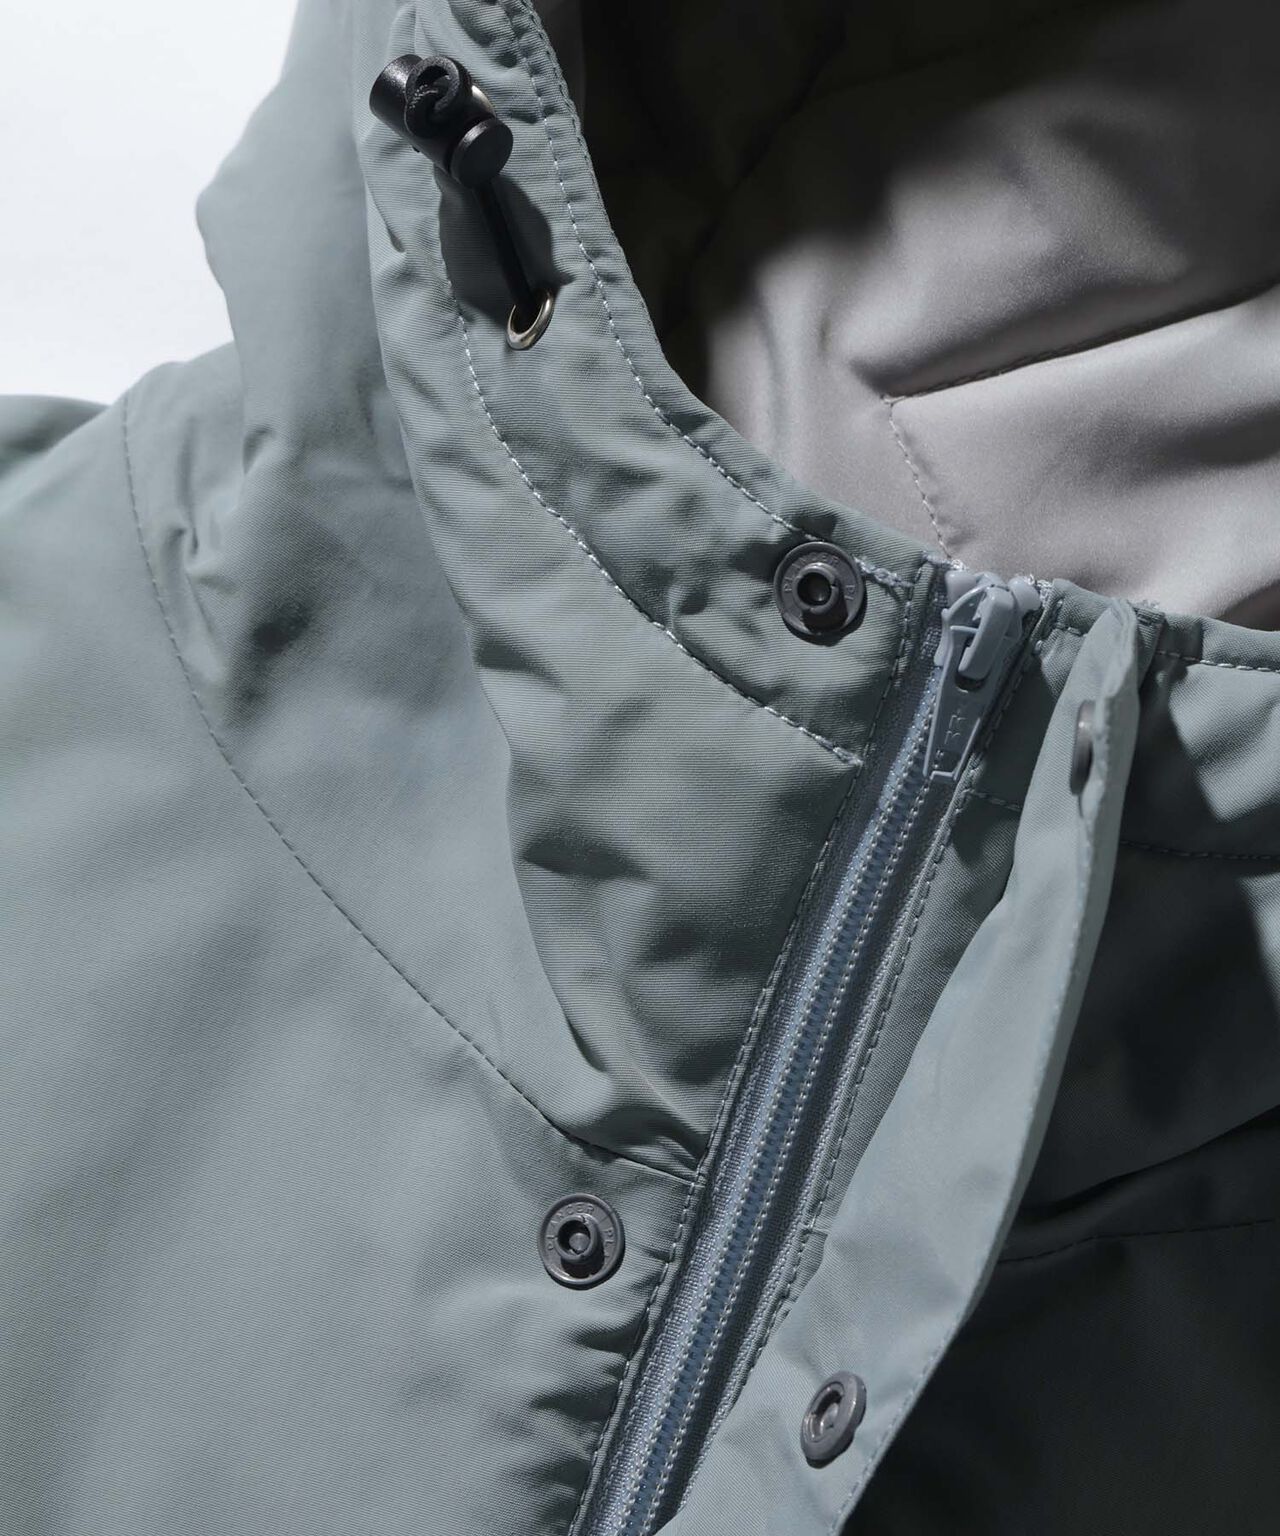 XLarge Nylon Puffer Jacket - Grey